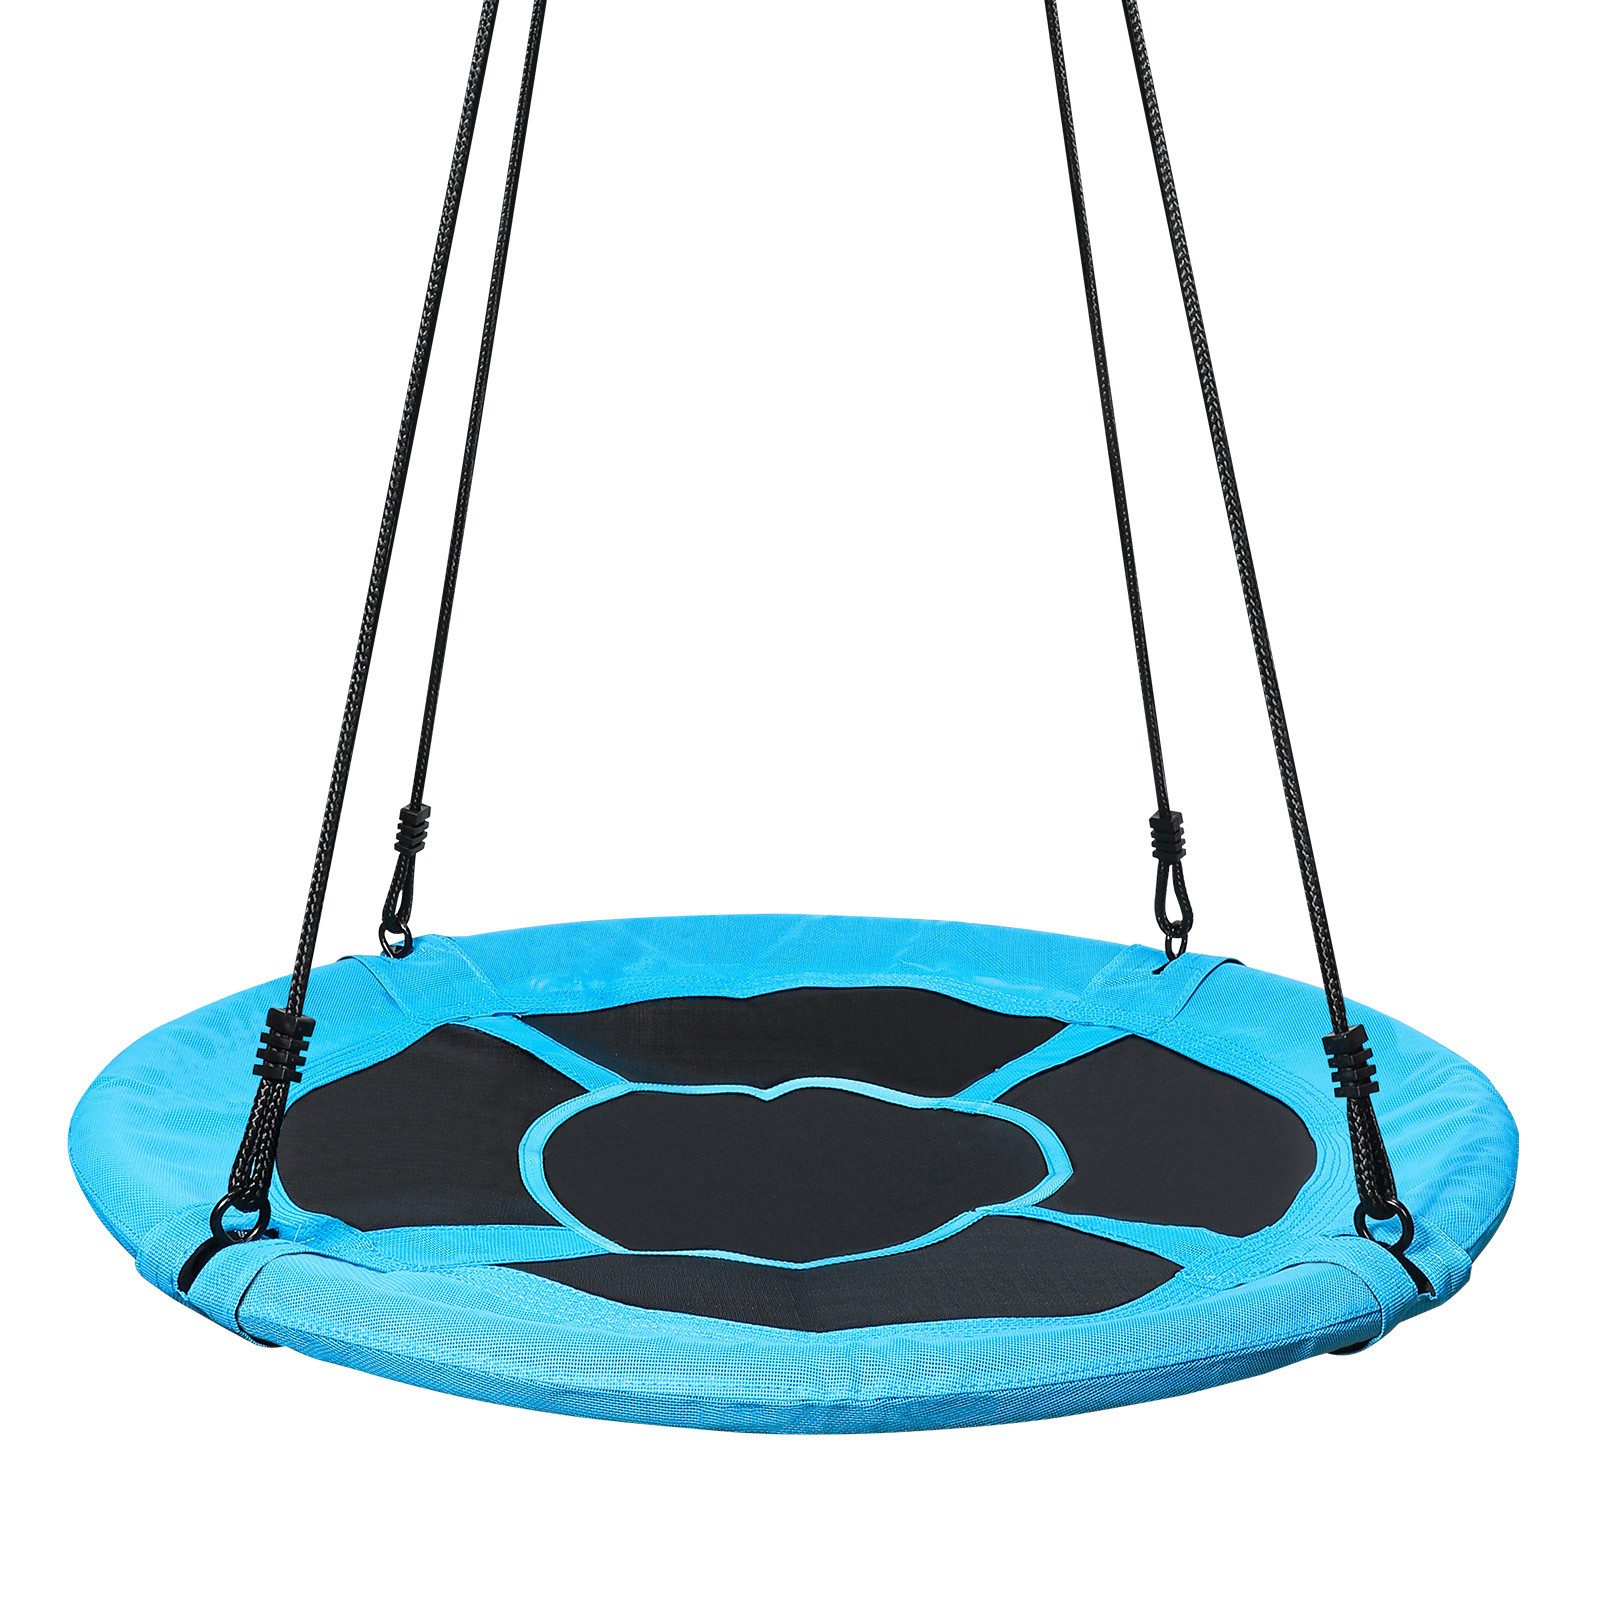 Yorbay Nestschaukel Tellerschaukel mit 150-180cm verstellbaren Seil, Rundschaukel für Kinder und Erwachsene Blau, Ø100cm/Ø120cm/Ø150cm